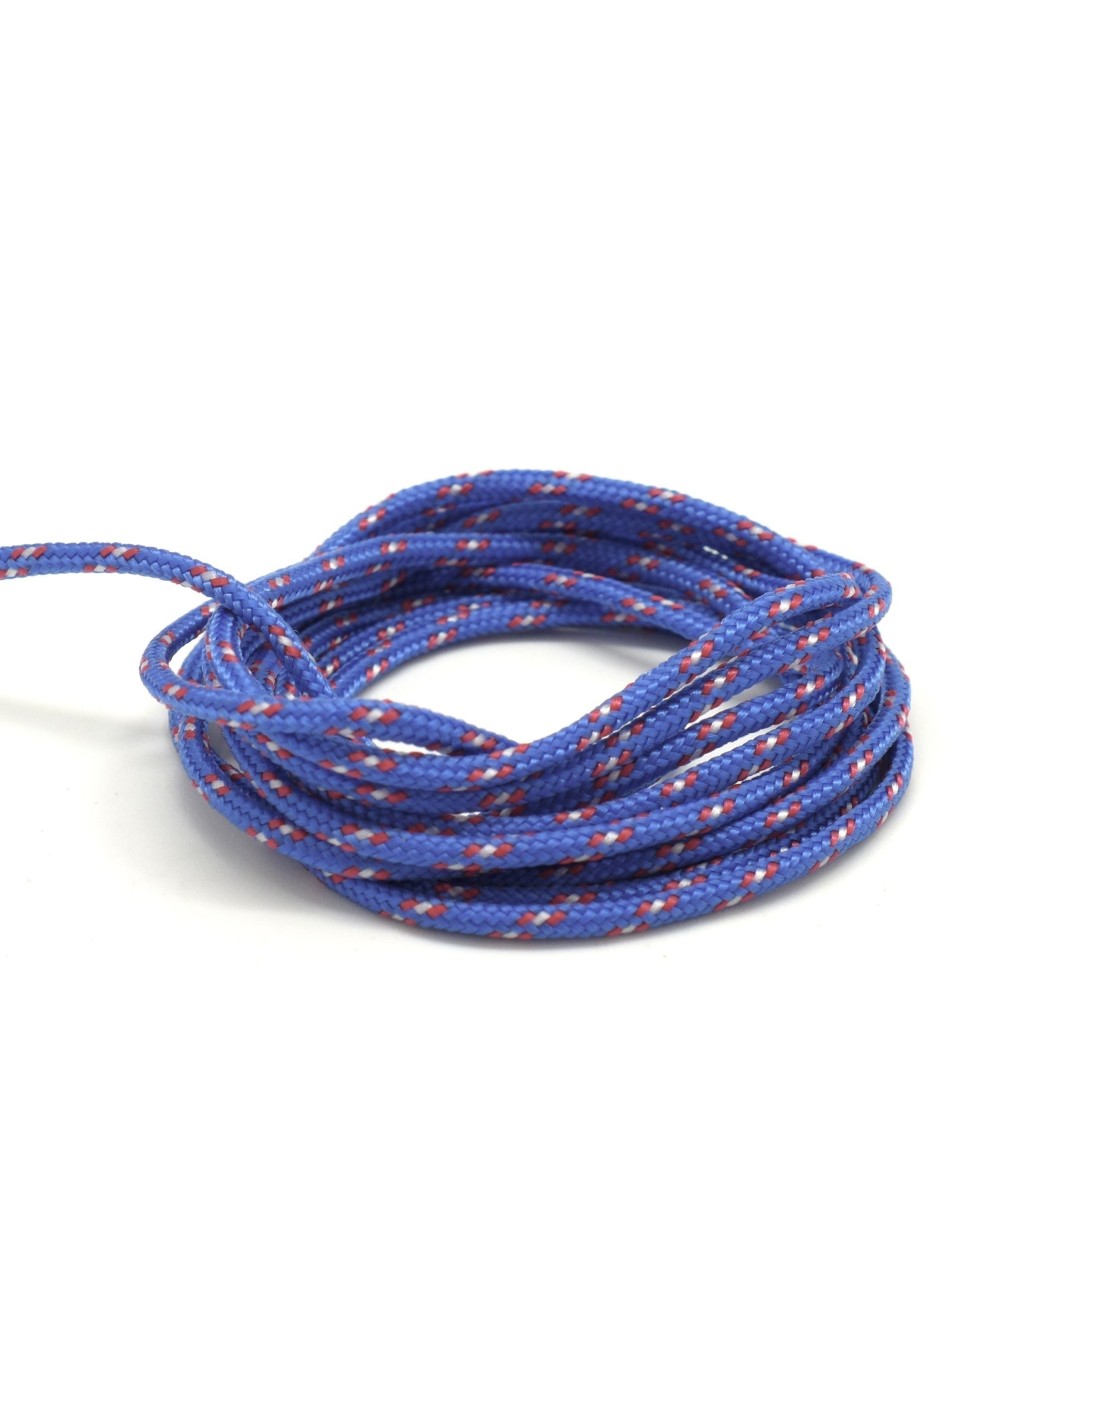 paracorde 2mm cordon tressé corde nylon gainé bleu rouge et blanc